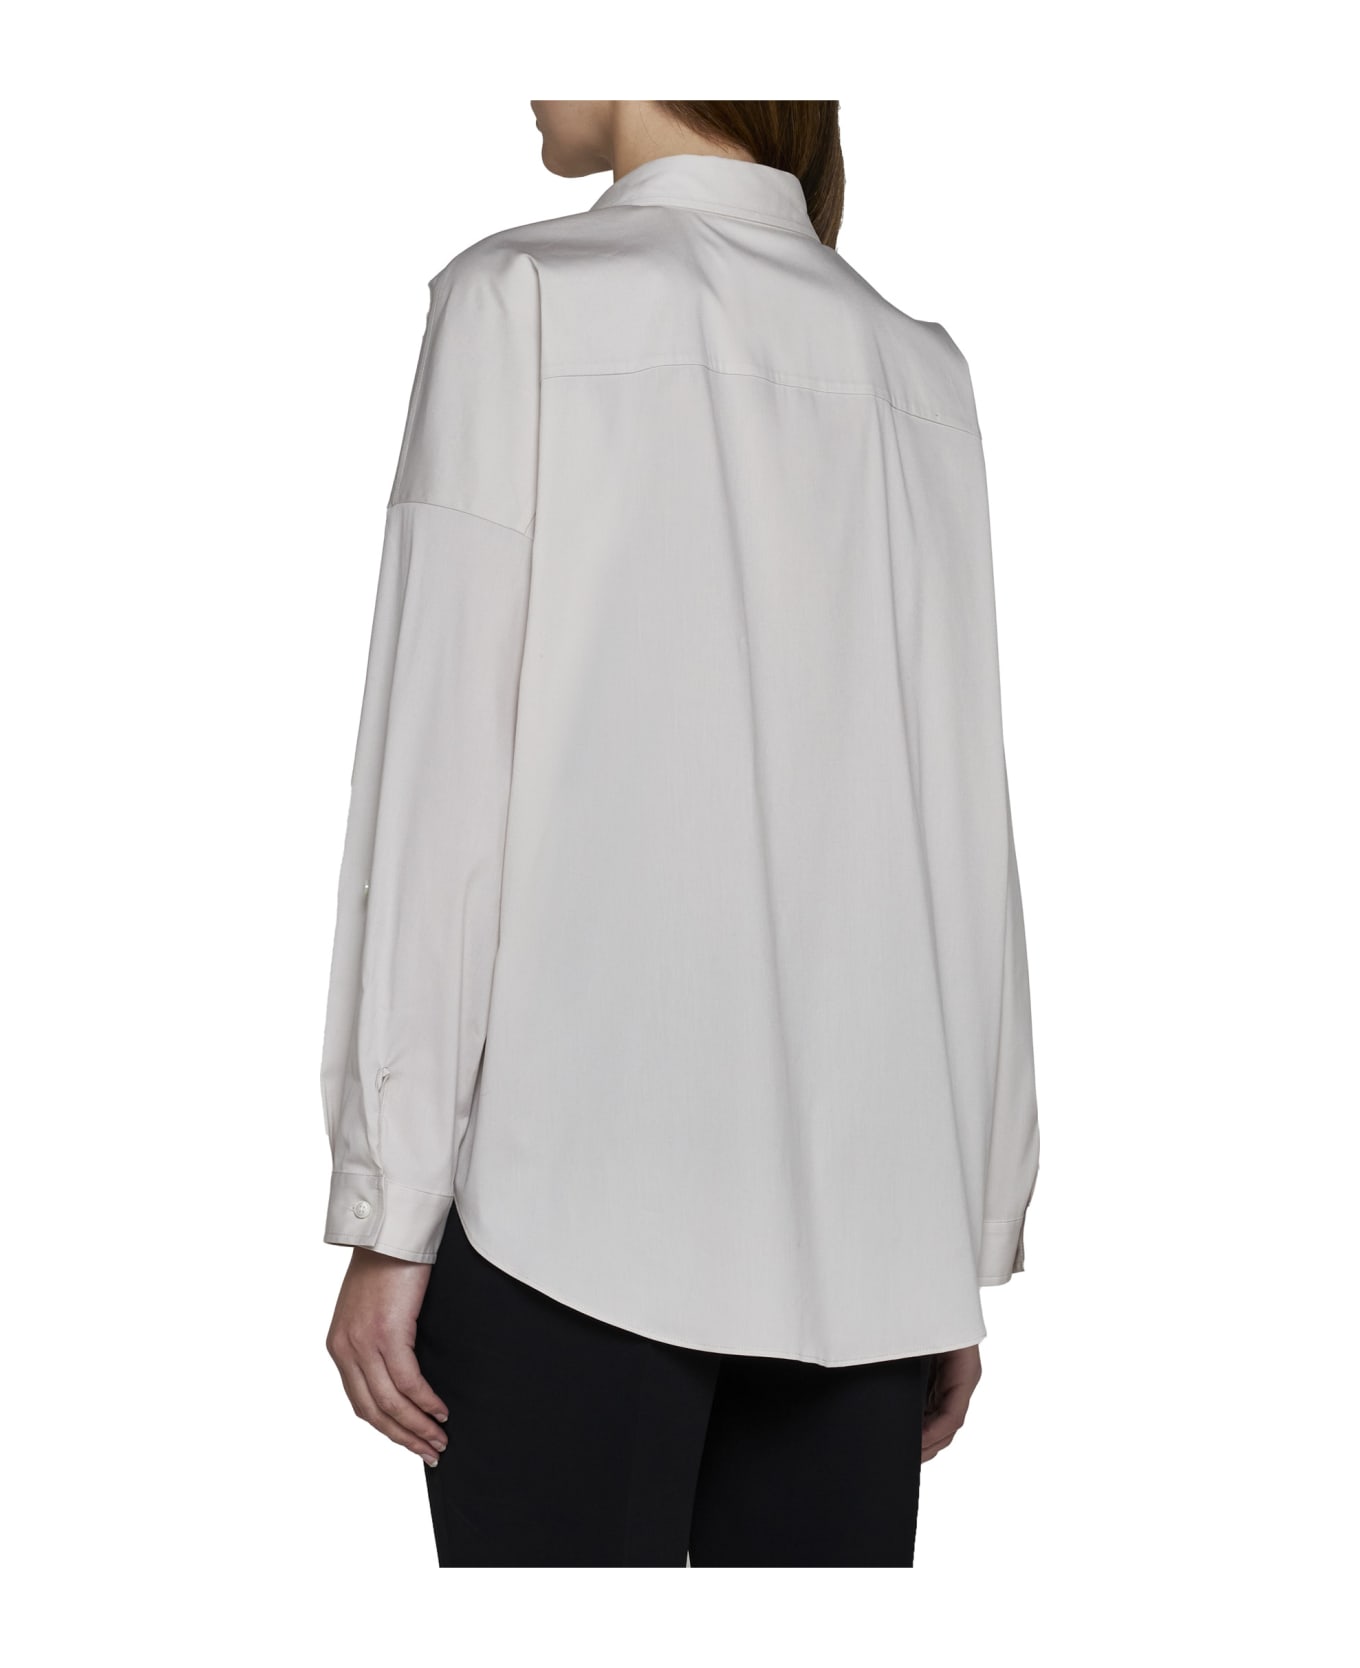 Brunello Cucinelli Shirt - Warm white